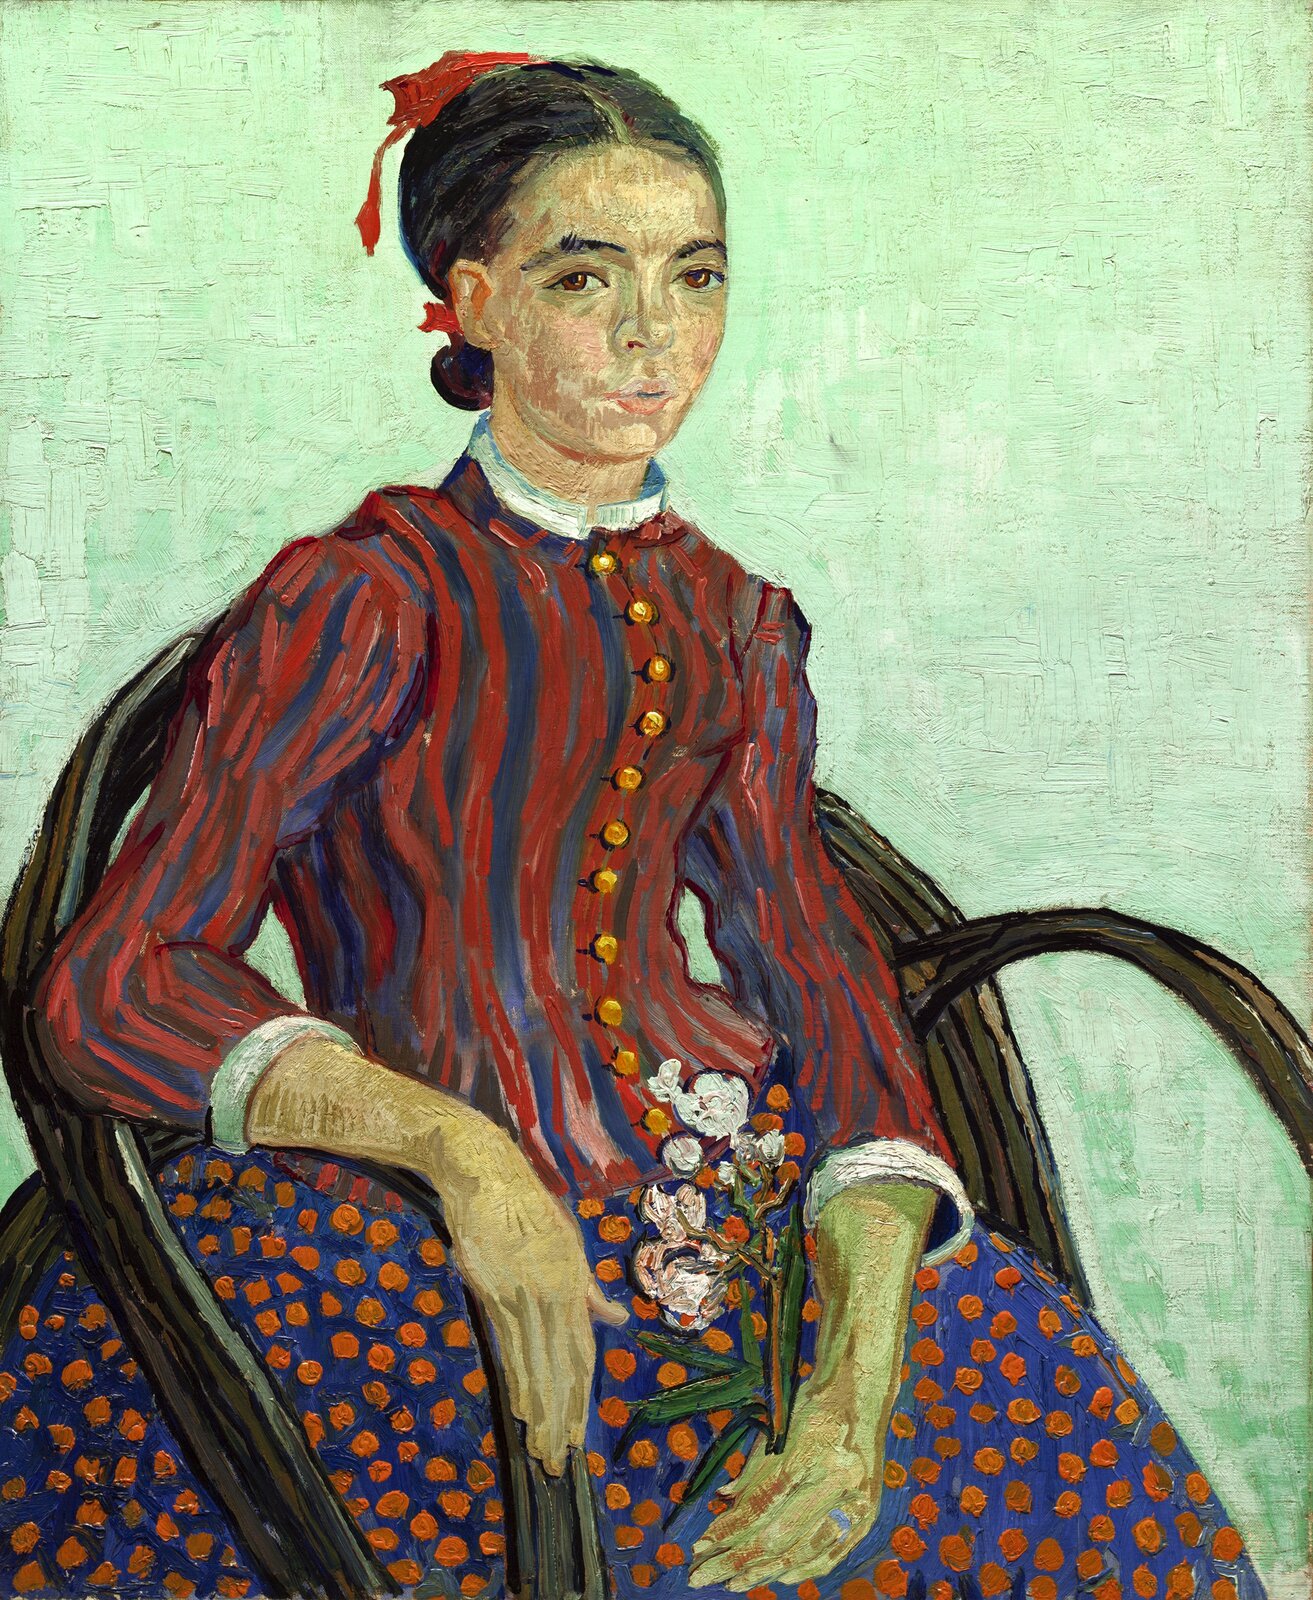 La Mousmé (Japońska dziewczynka) Źródło: Vincent van Gogh (1853–1890; czyt.: wincent wan gog; holenderski malarz), La Mousmé (Japońska dziewczynka), 1888, olej na płótnie, National Gallery of Art, Waszyngton, domena publiczna.